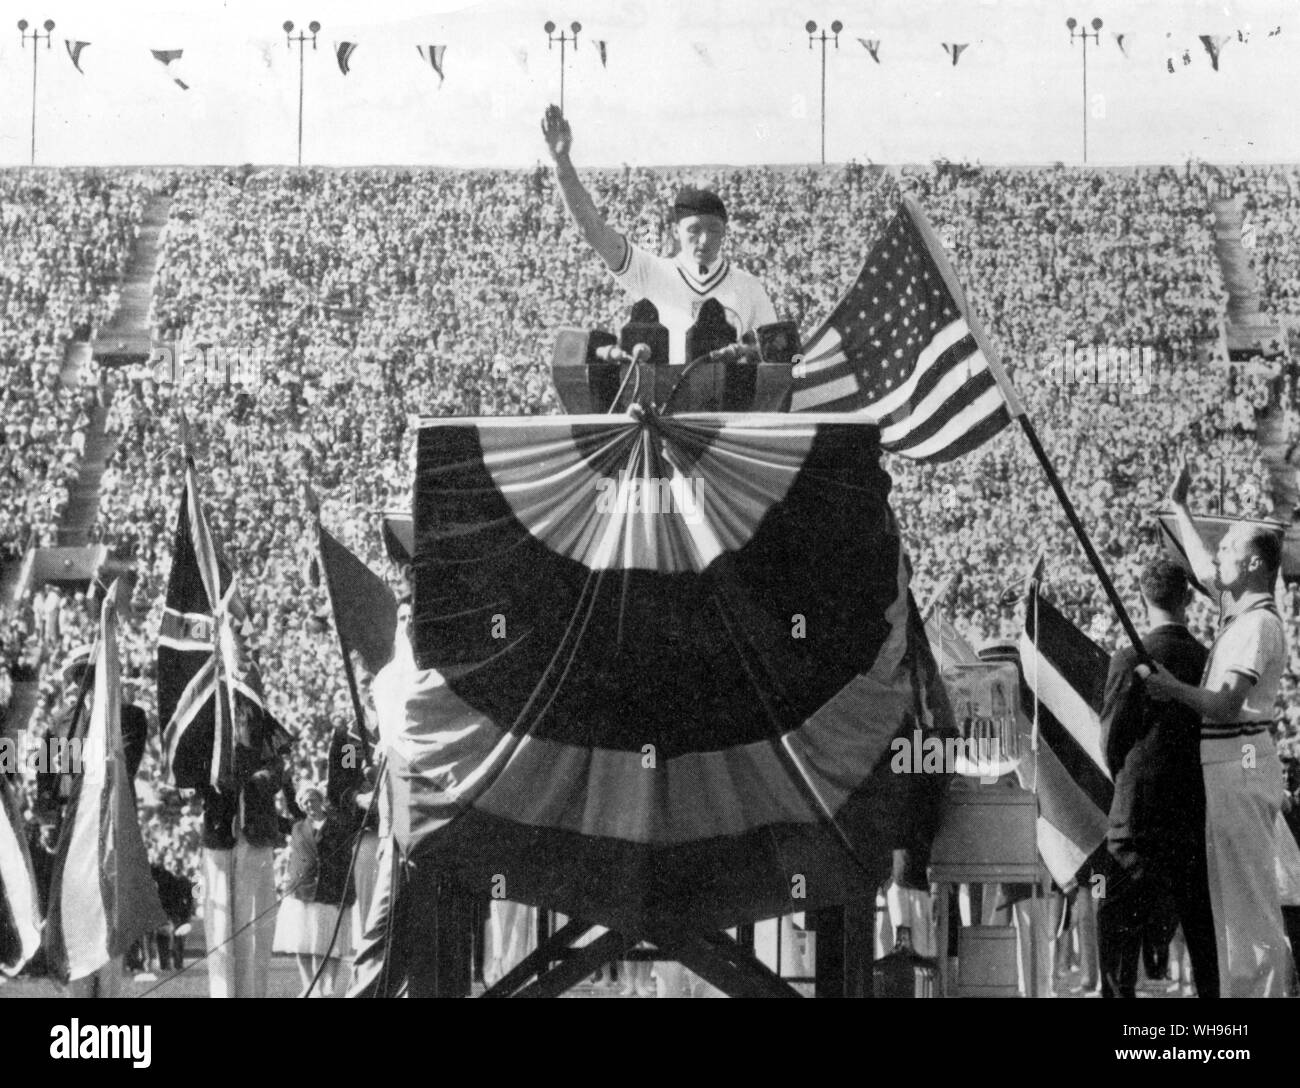 George Calnan un membro della squadra americana si pronuncia il giuramento olimpico a la cerimonia di apertura dei Giochi Olimpici di Los Angeles 1932 Foto Stock